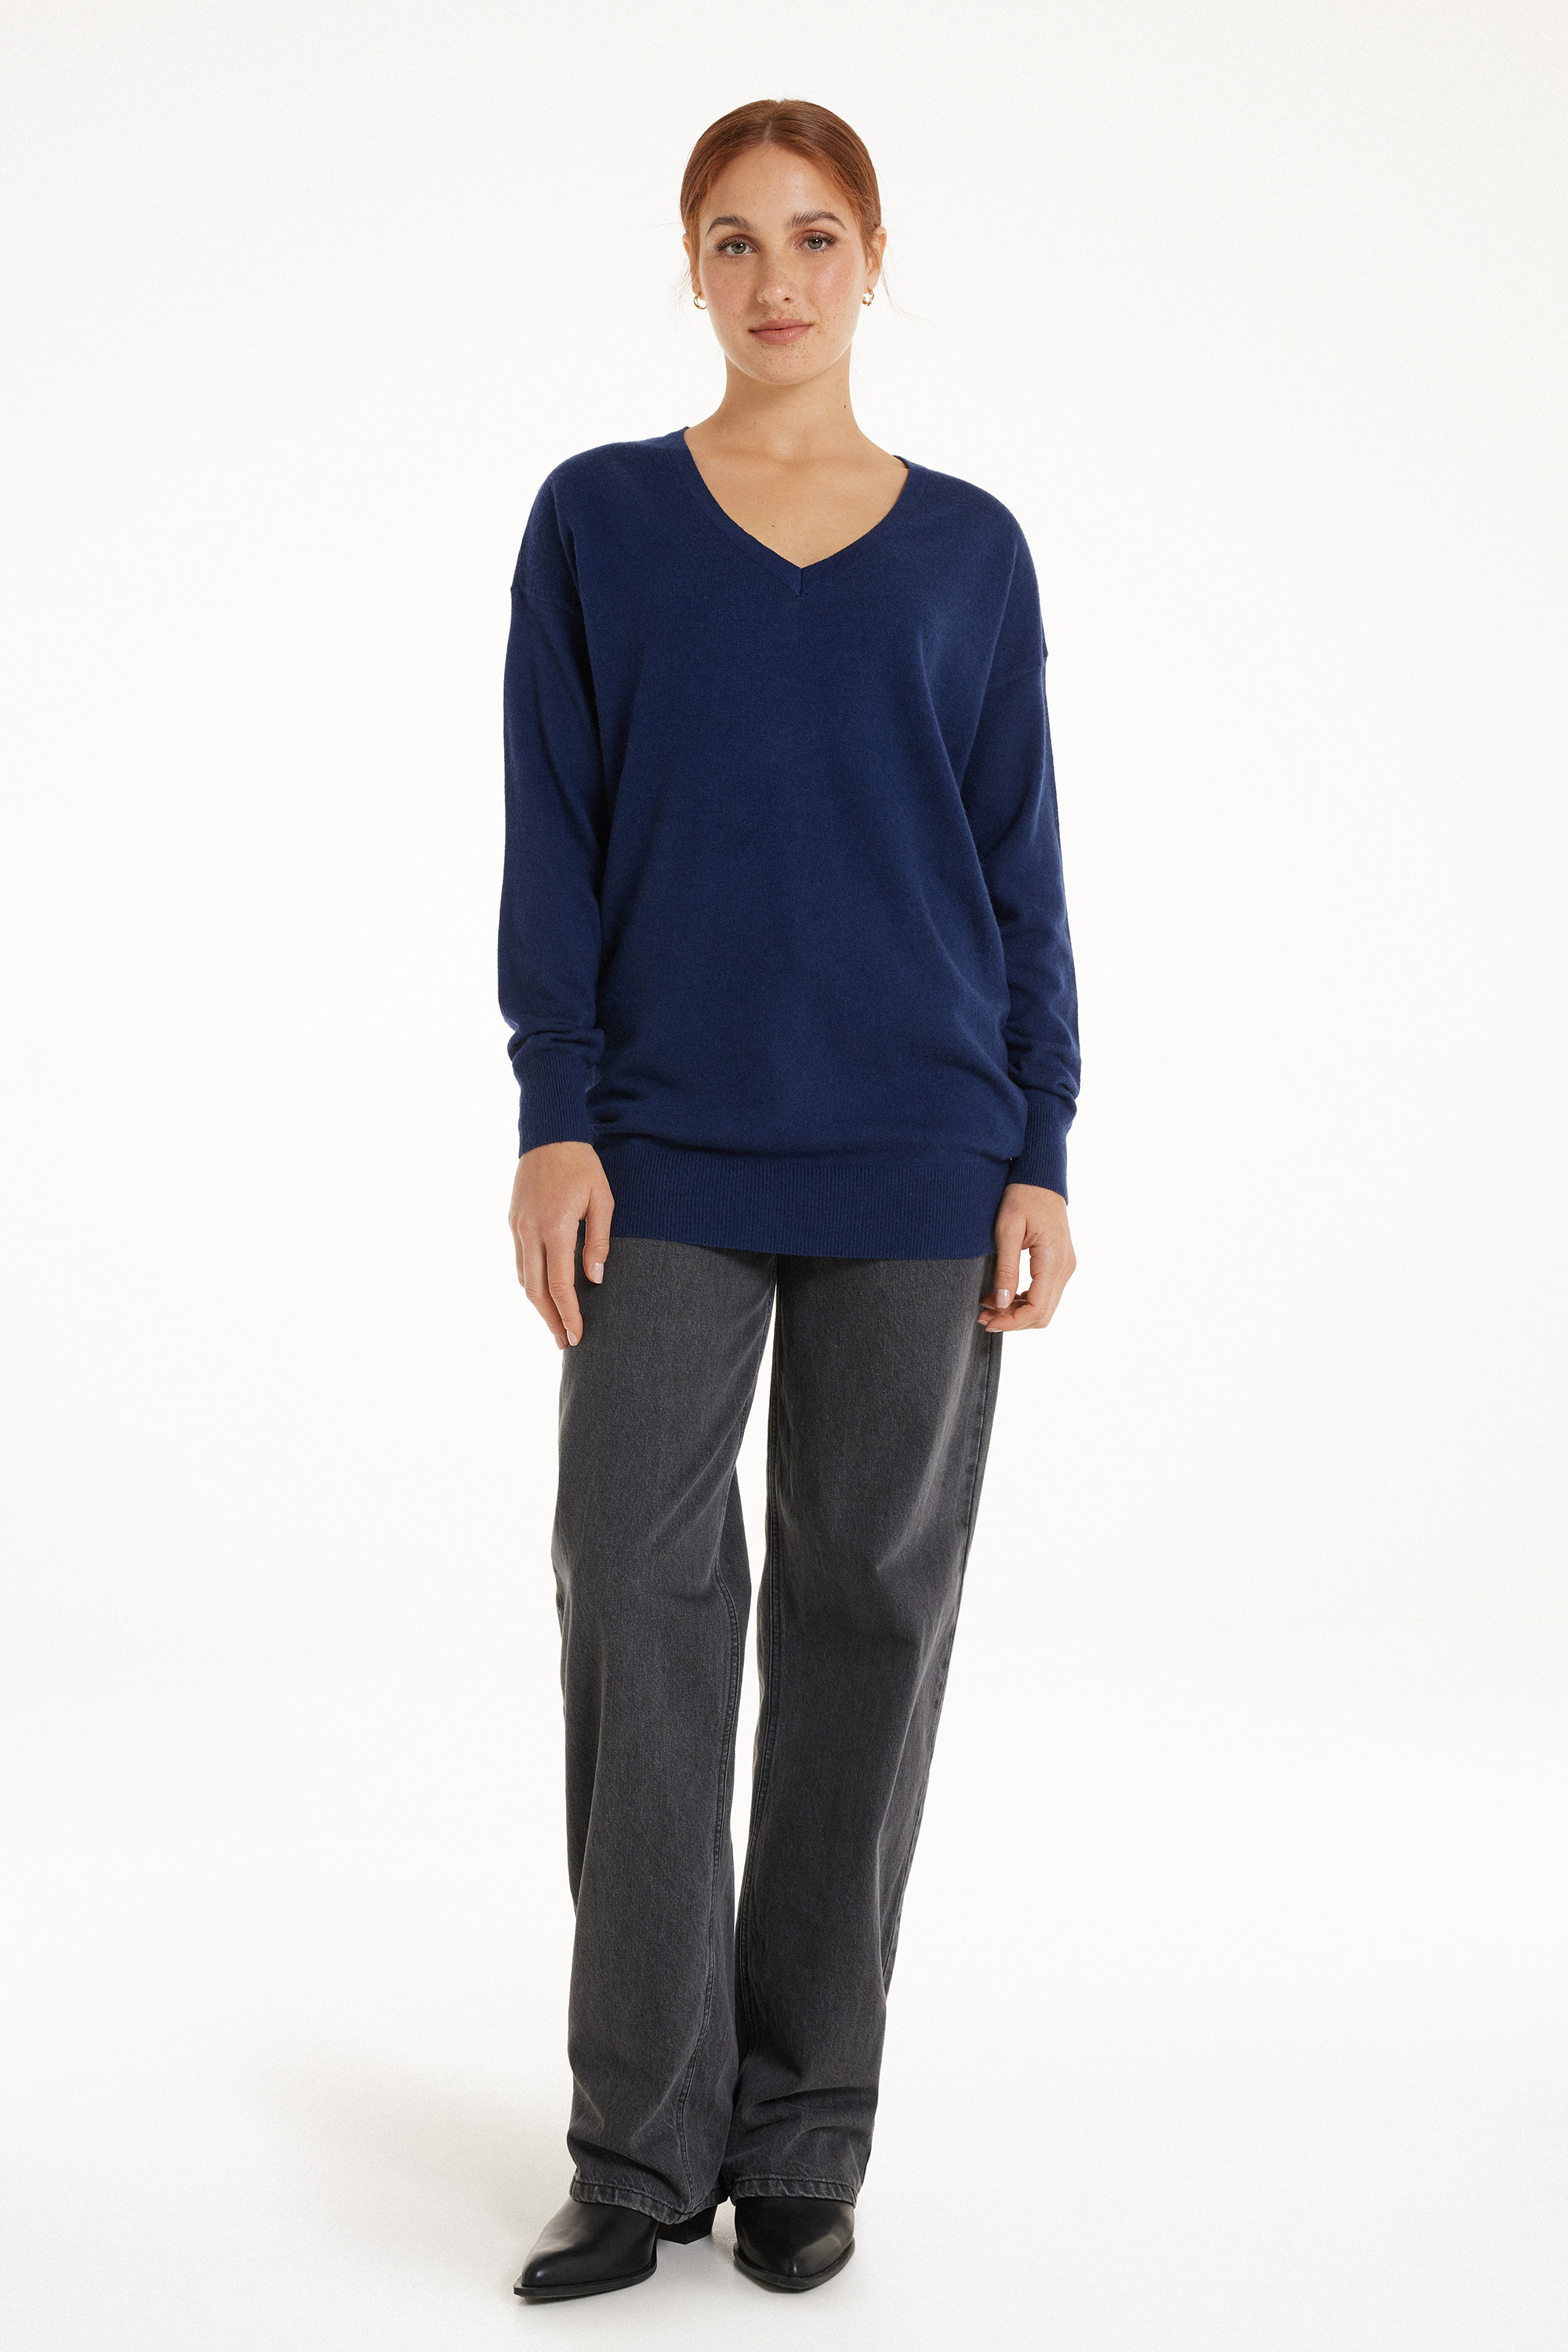 Mittelschwerer Pullover mit langen Ärmeln, V-Ausschnitt und Wolle